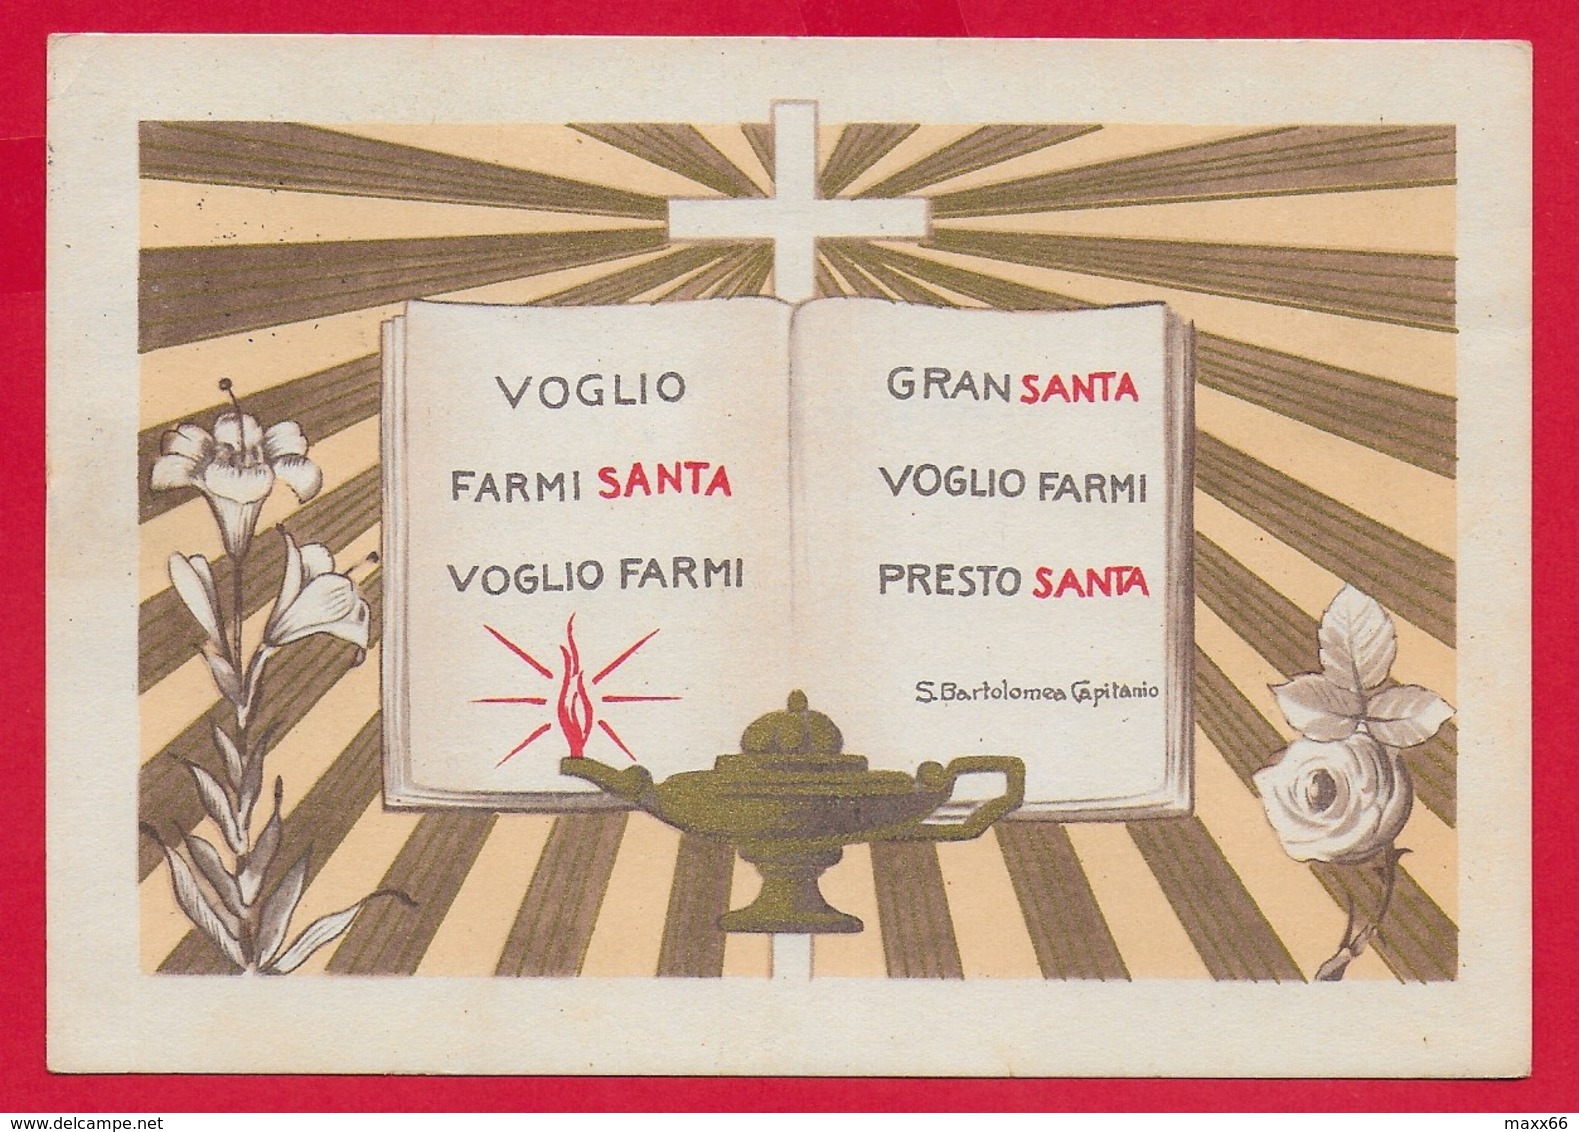 CARTOLINA VG ITALIA - Voglio Farmi Santa ... - S. Bartolomea CAPITANIO - Suore Di Carità - 10 X 15 - 1968 - Santi